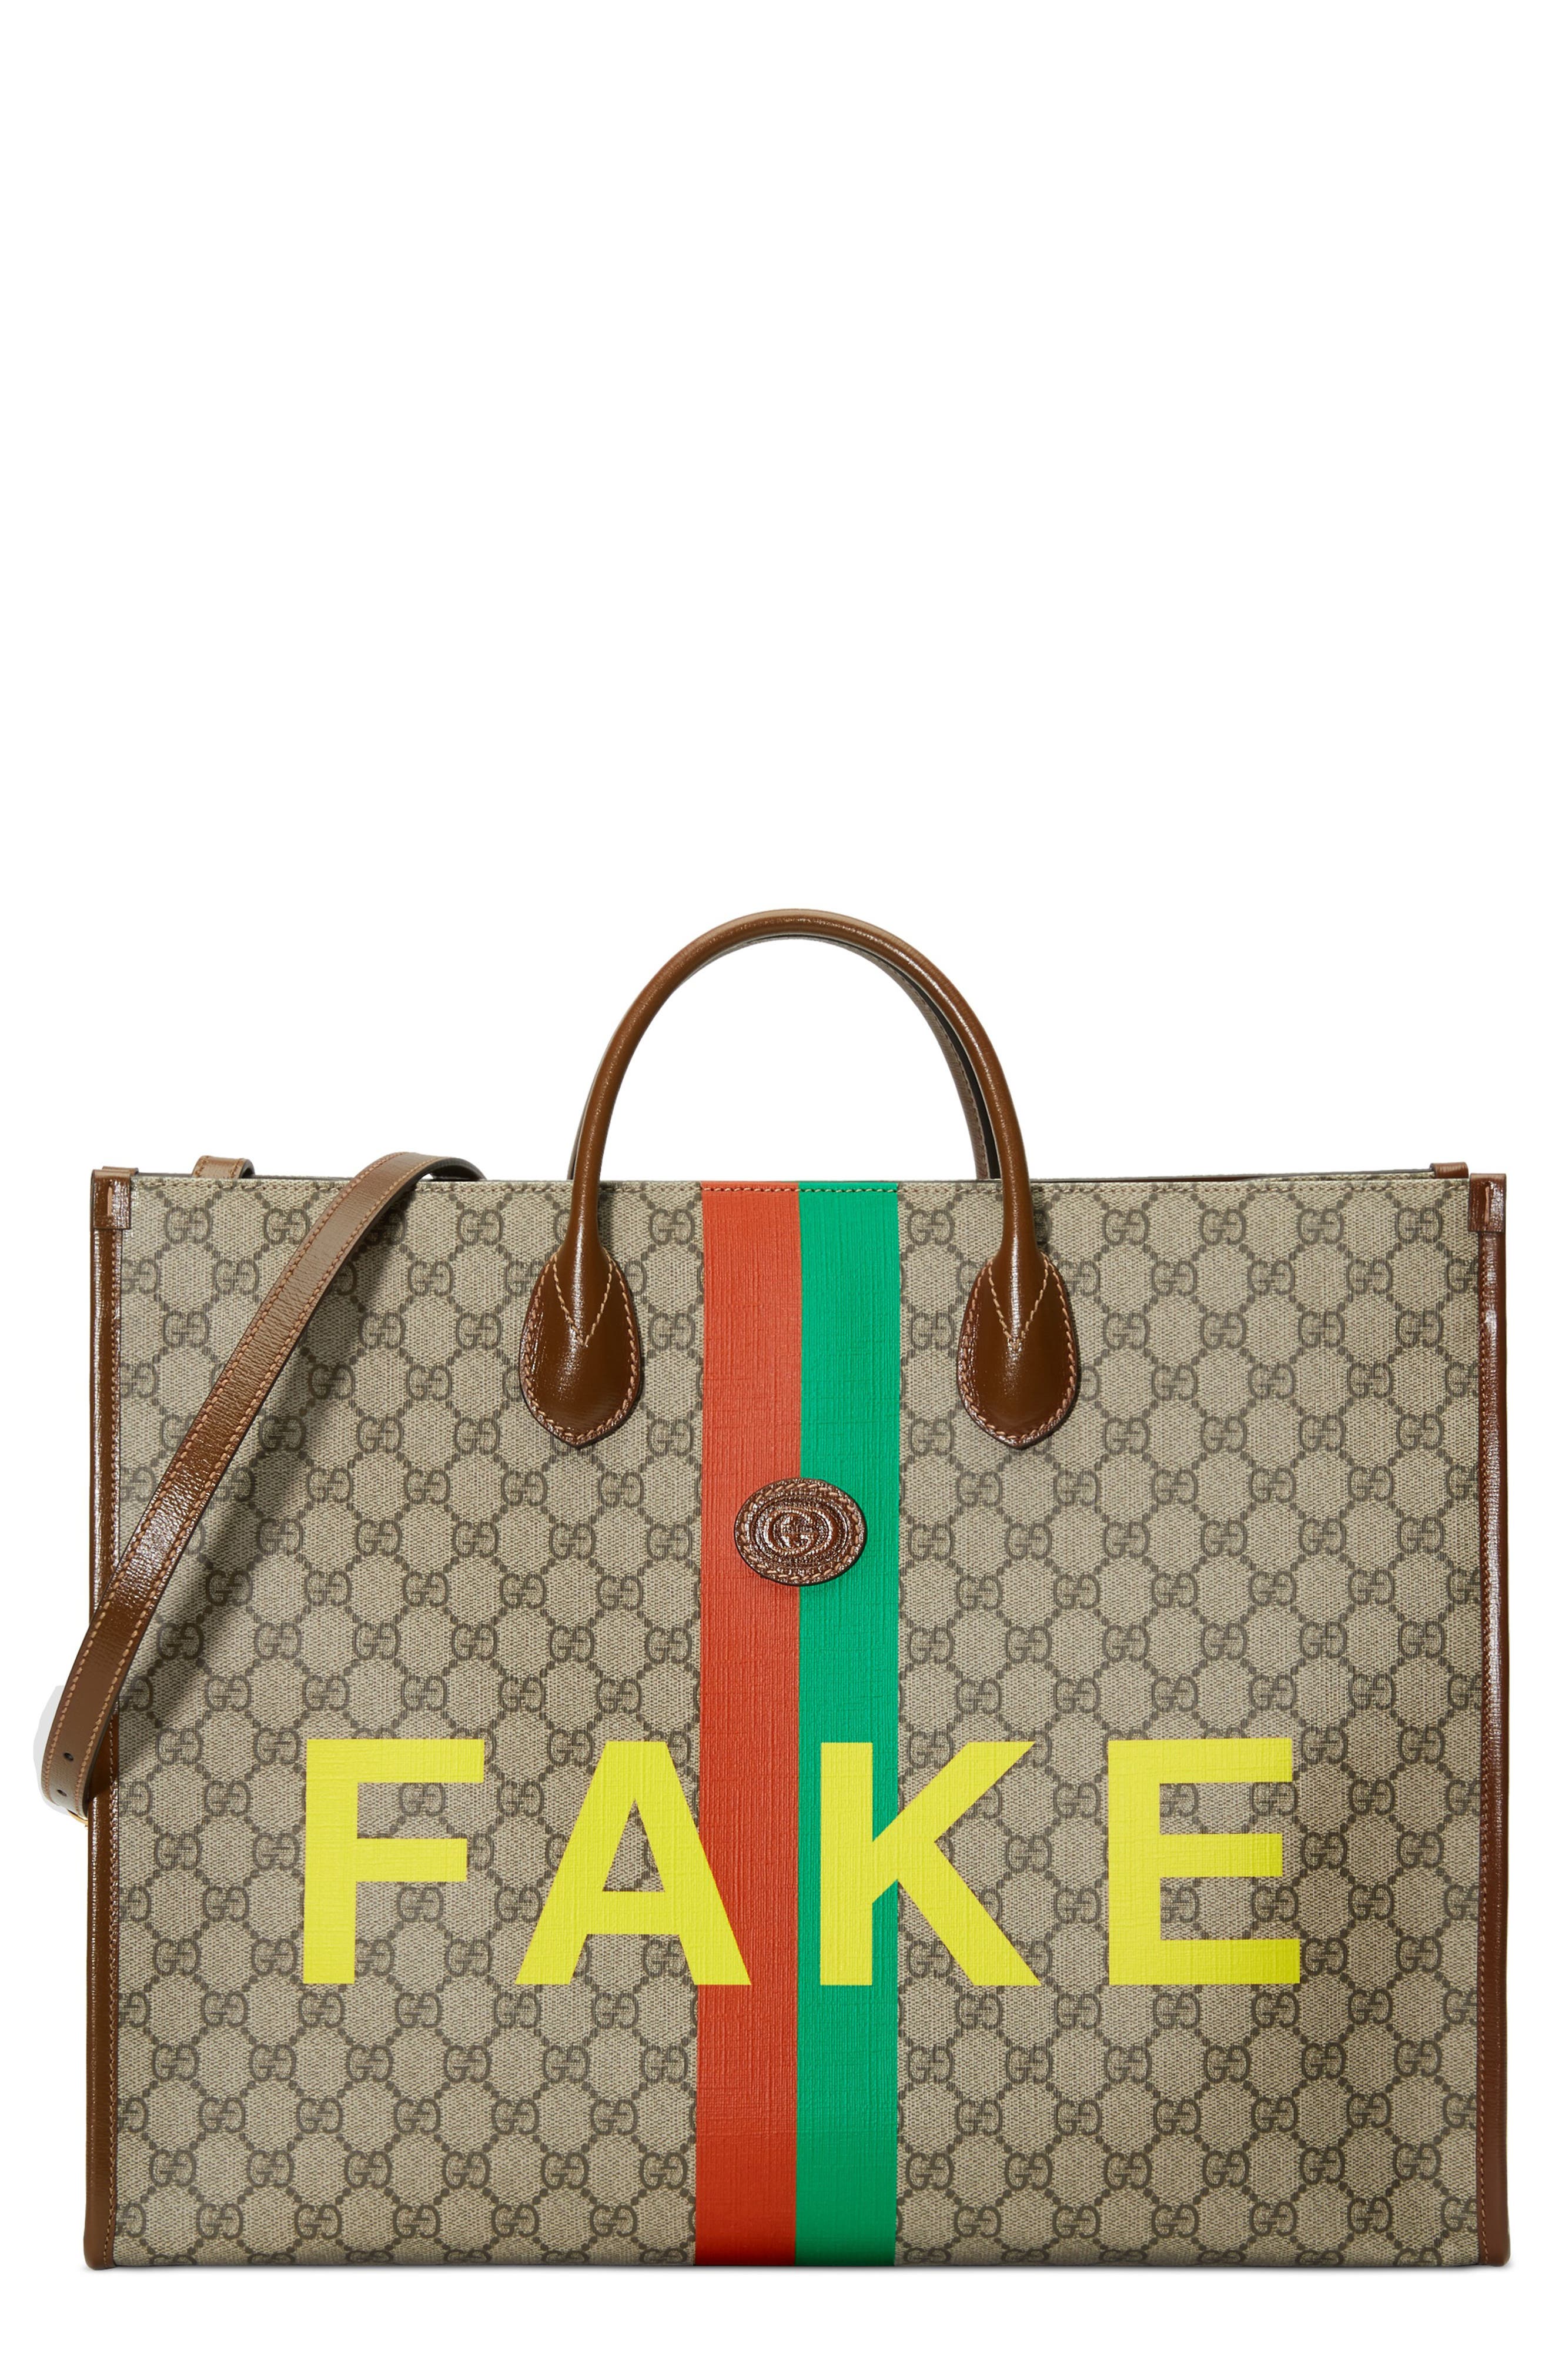 gucci bag real or fake